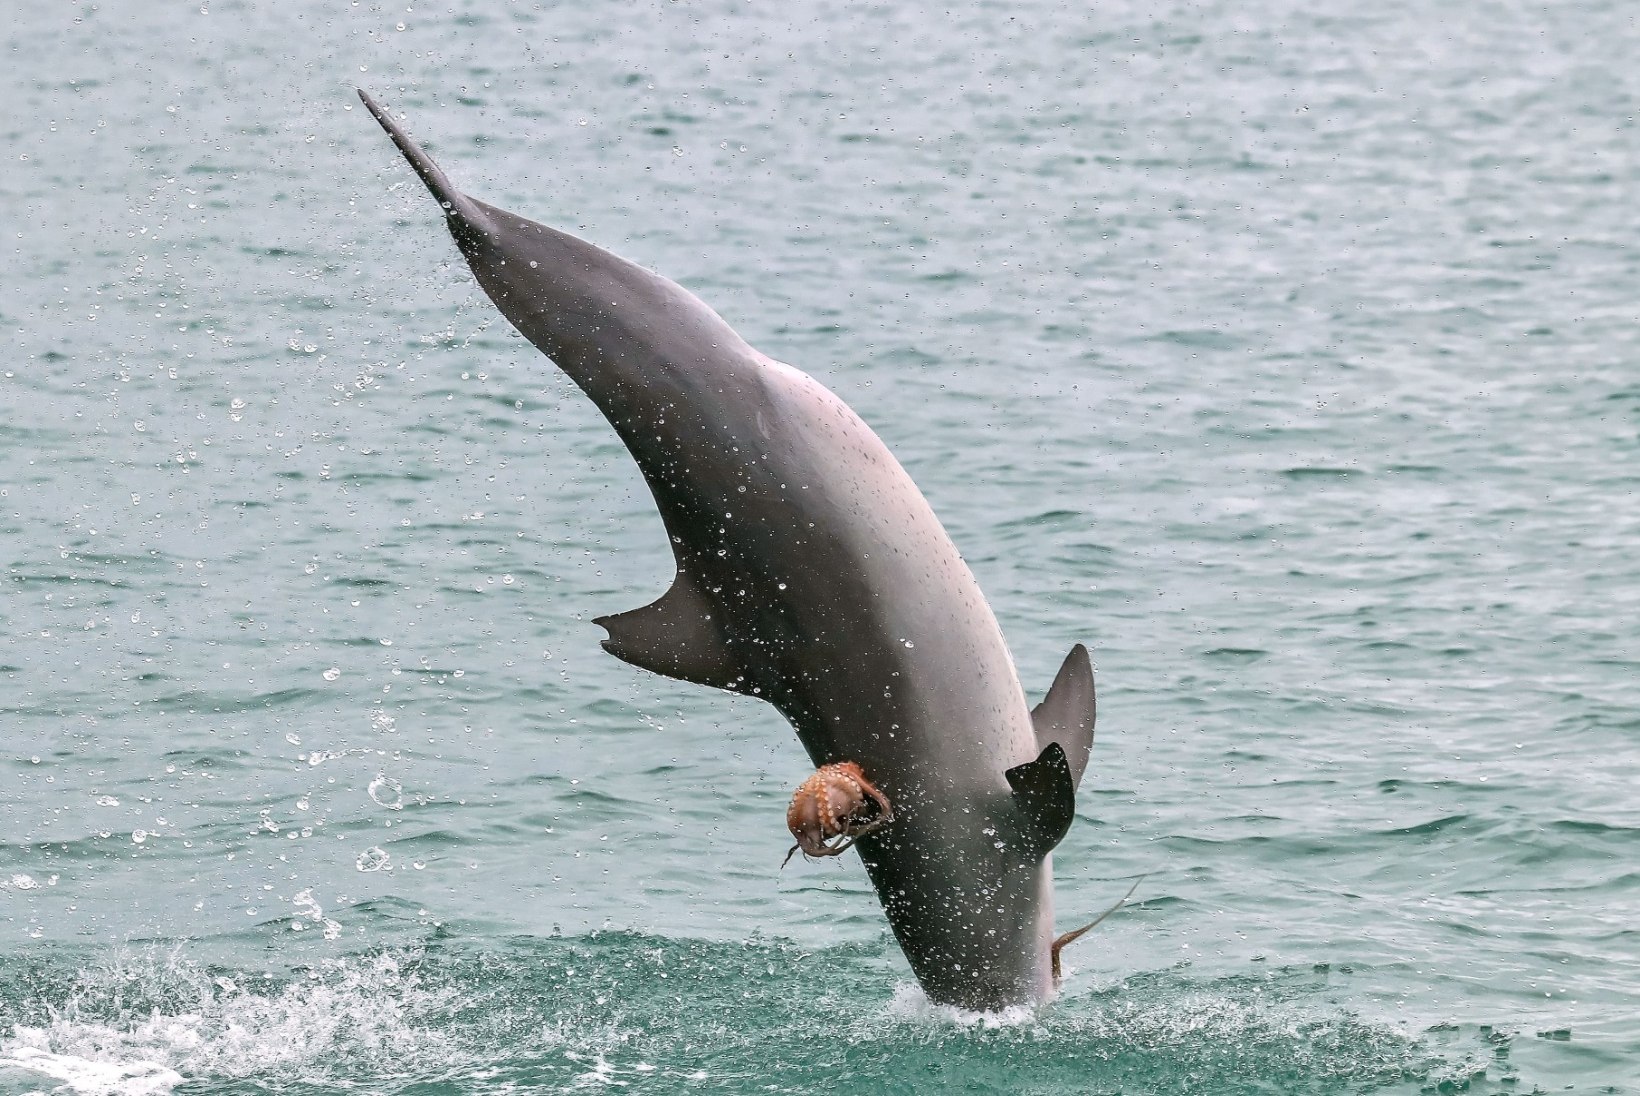 FOTOD | HARULDANE VAATEPILT: kaheksajalg klammerdus delfiini külge